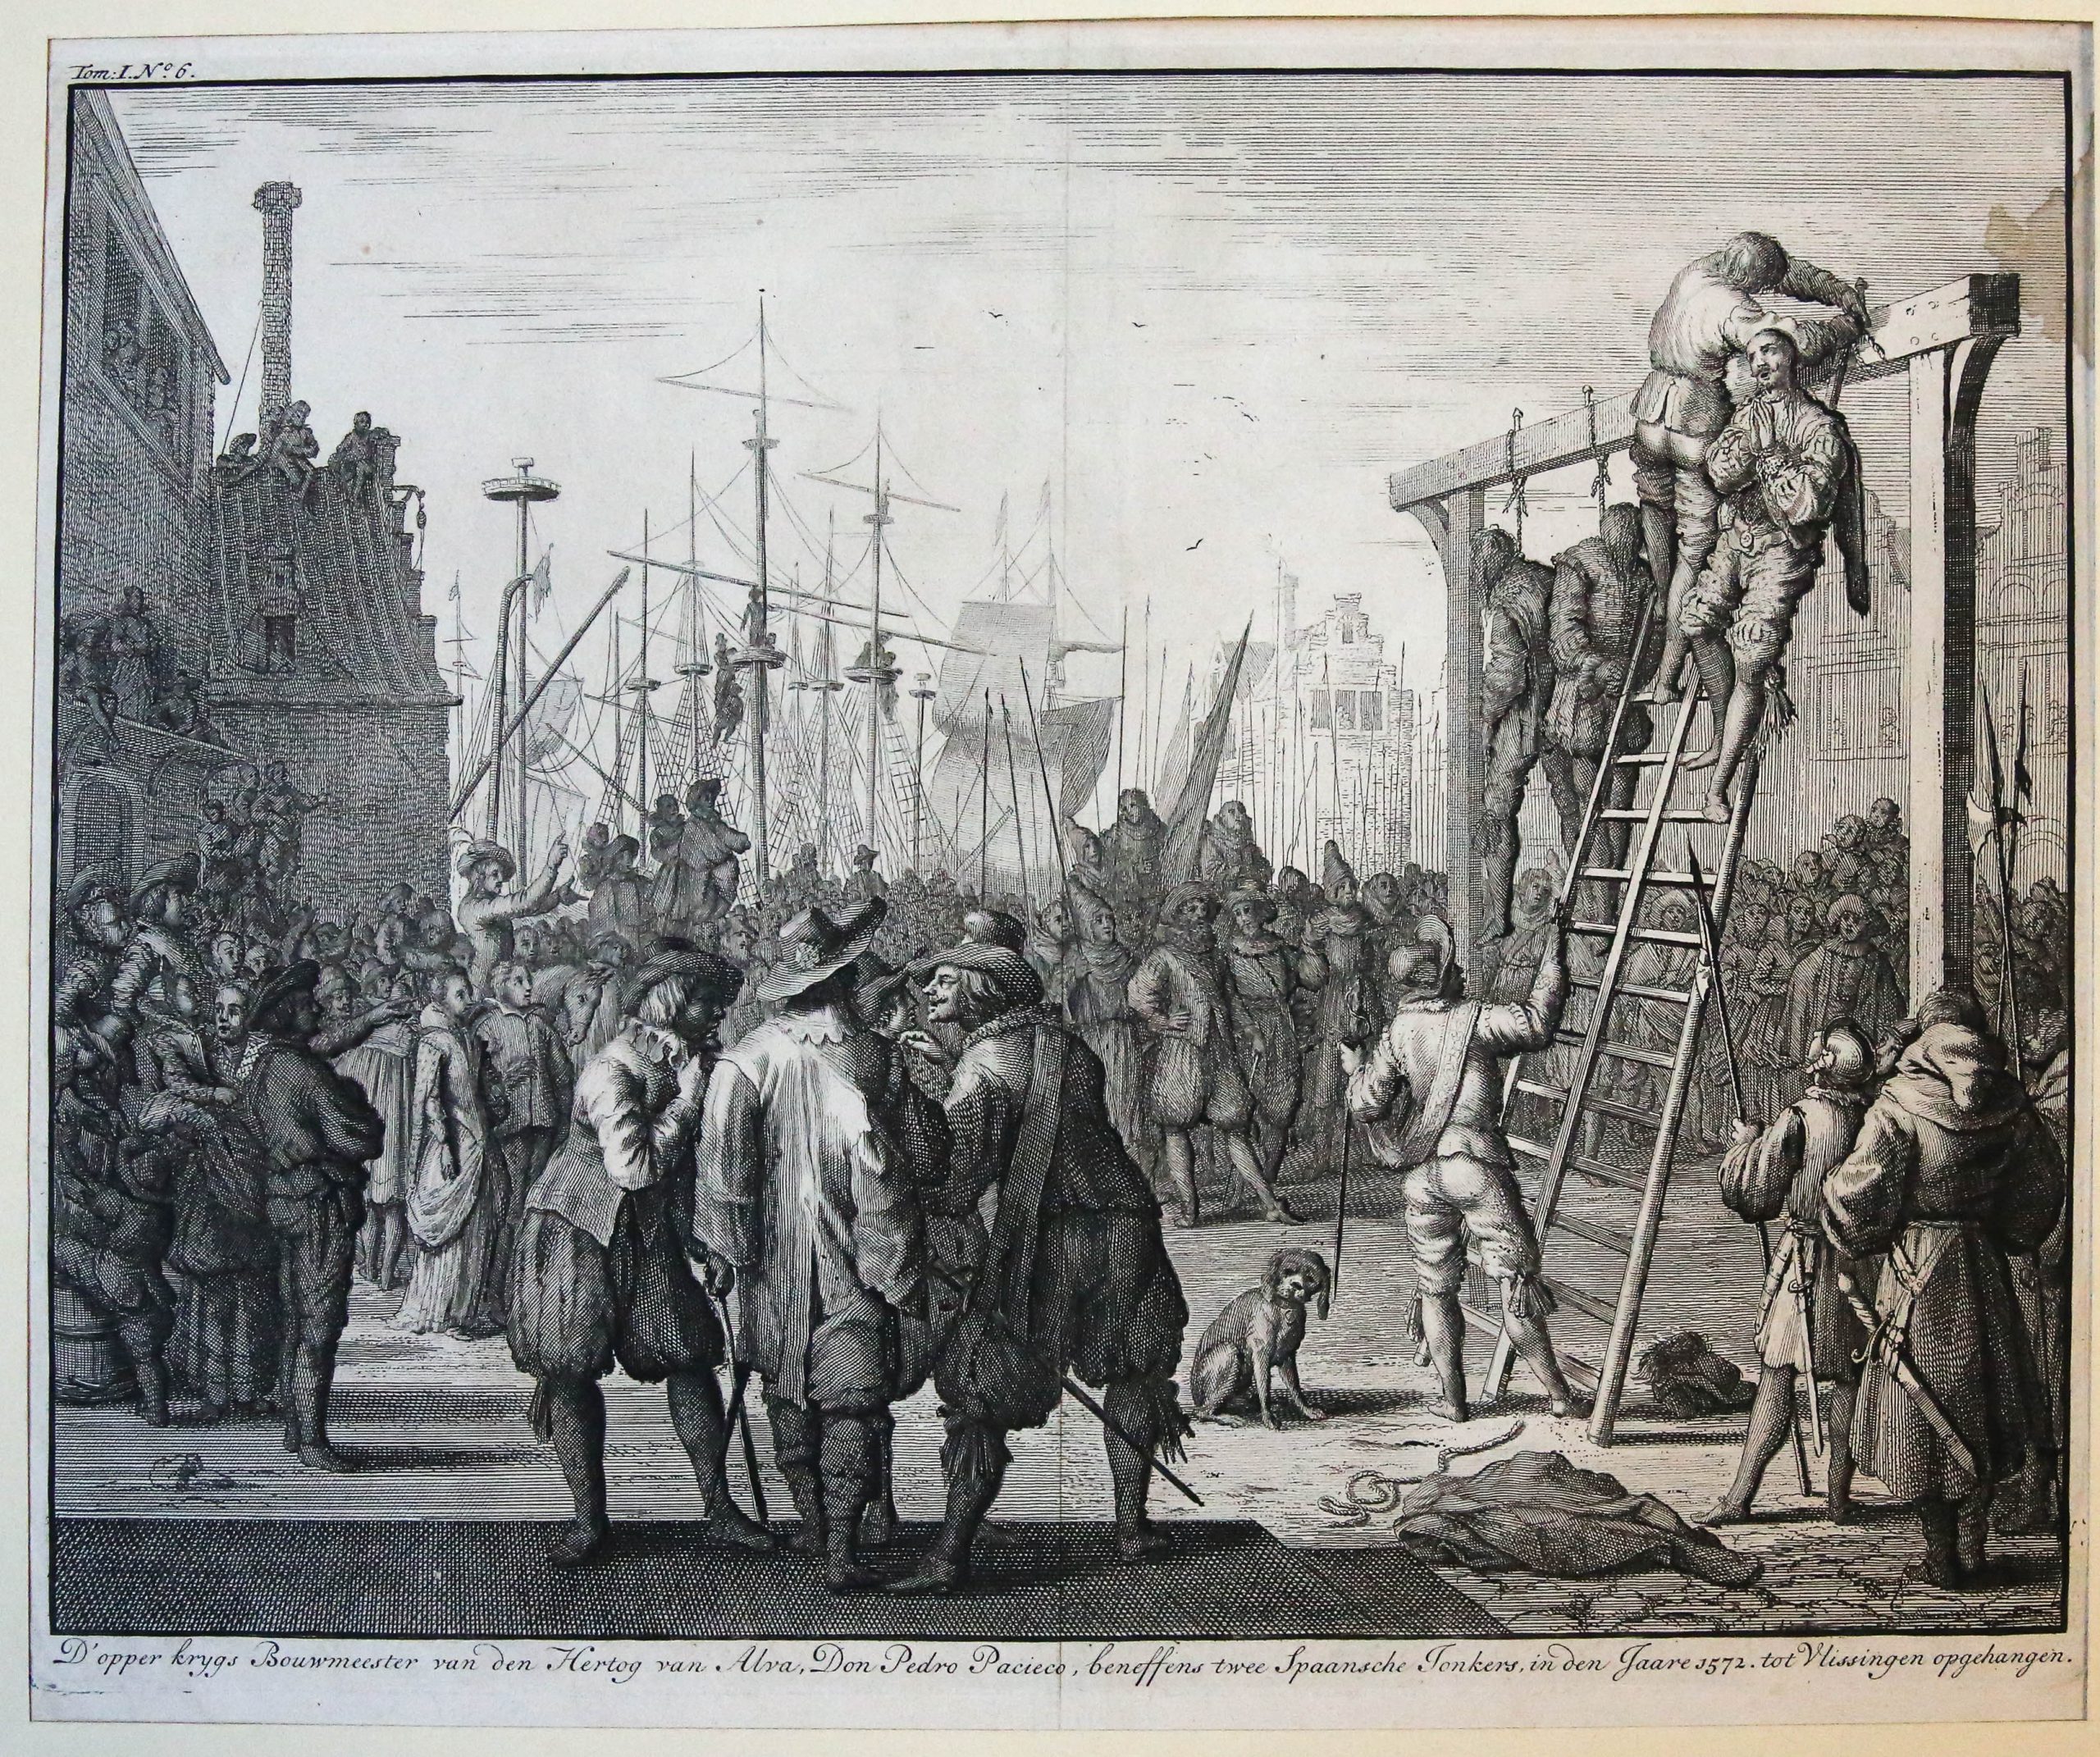 'D'opper krygs Bouwmeester van den Hertog van Alva, Don Pedro Pacieco ... in den Jaare 1572. tot Vlissingen opgehangen'; Pacieco hanged in Flushing, 1572